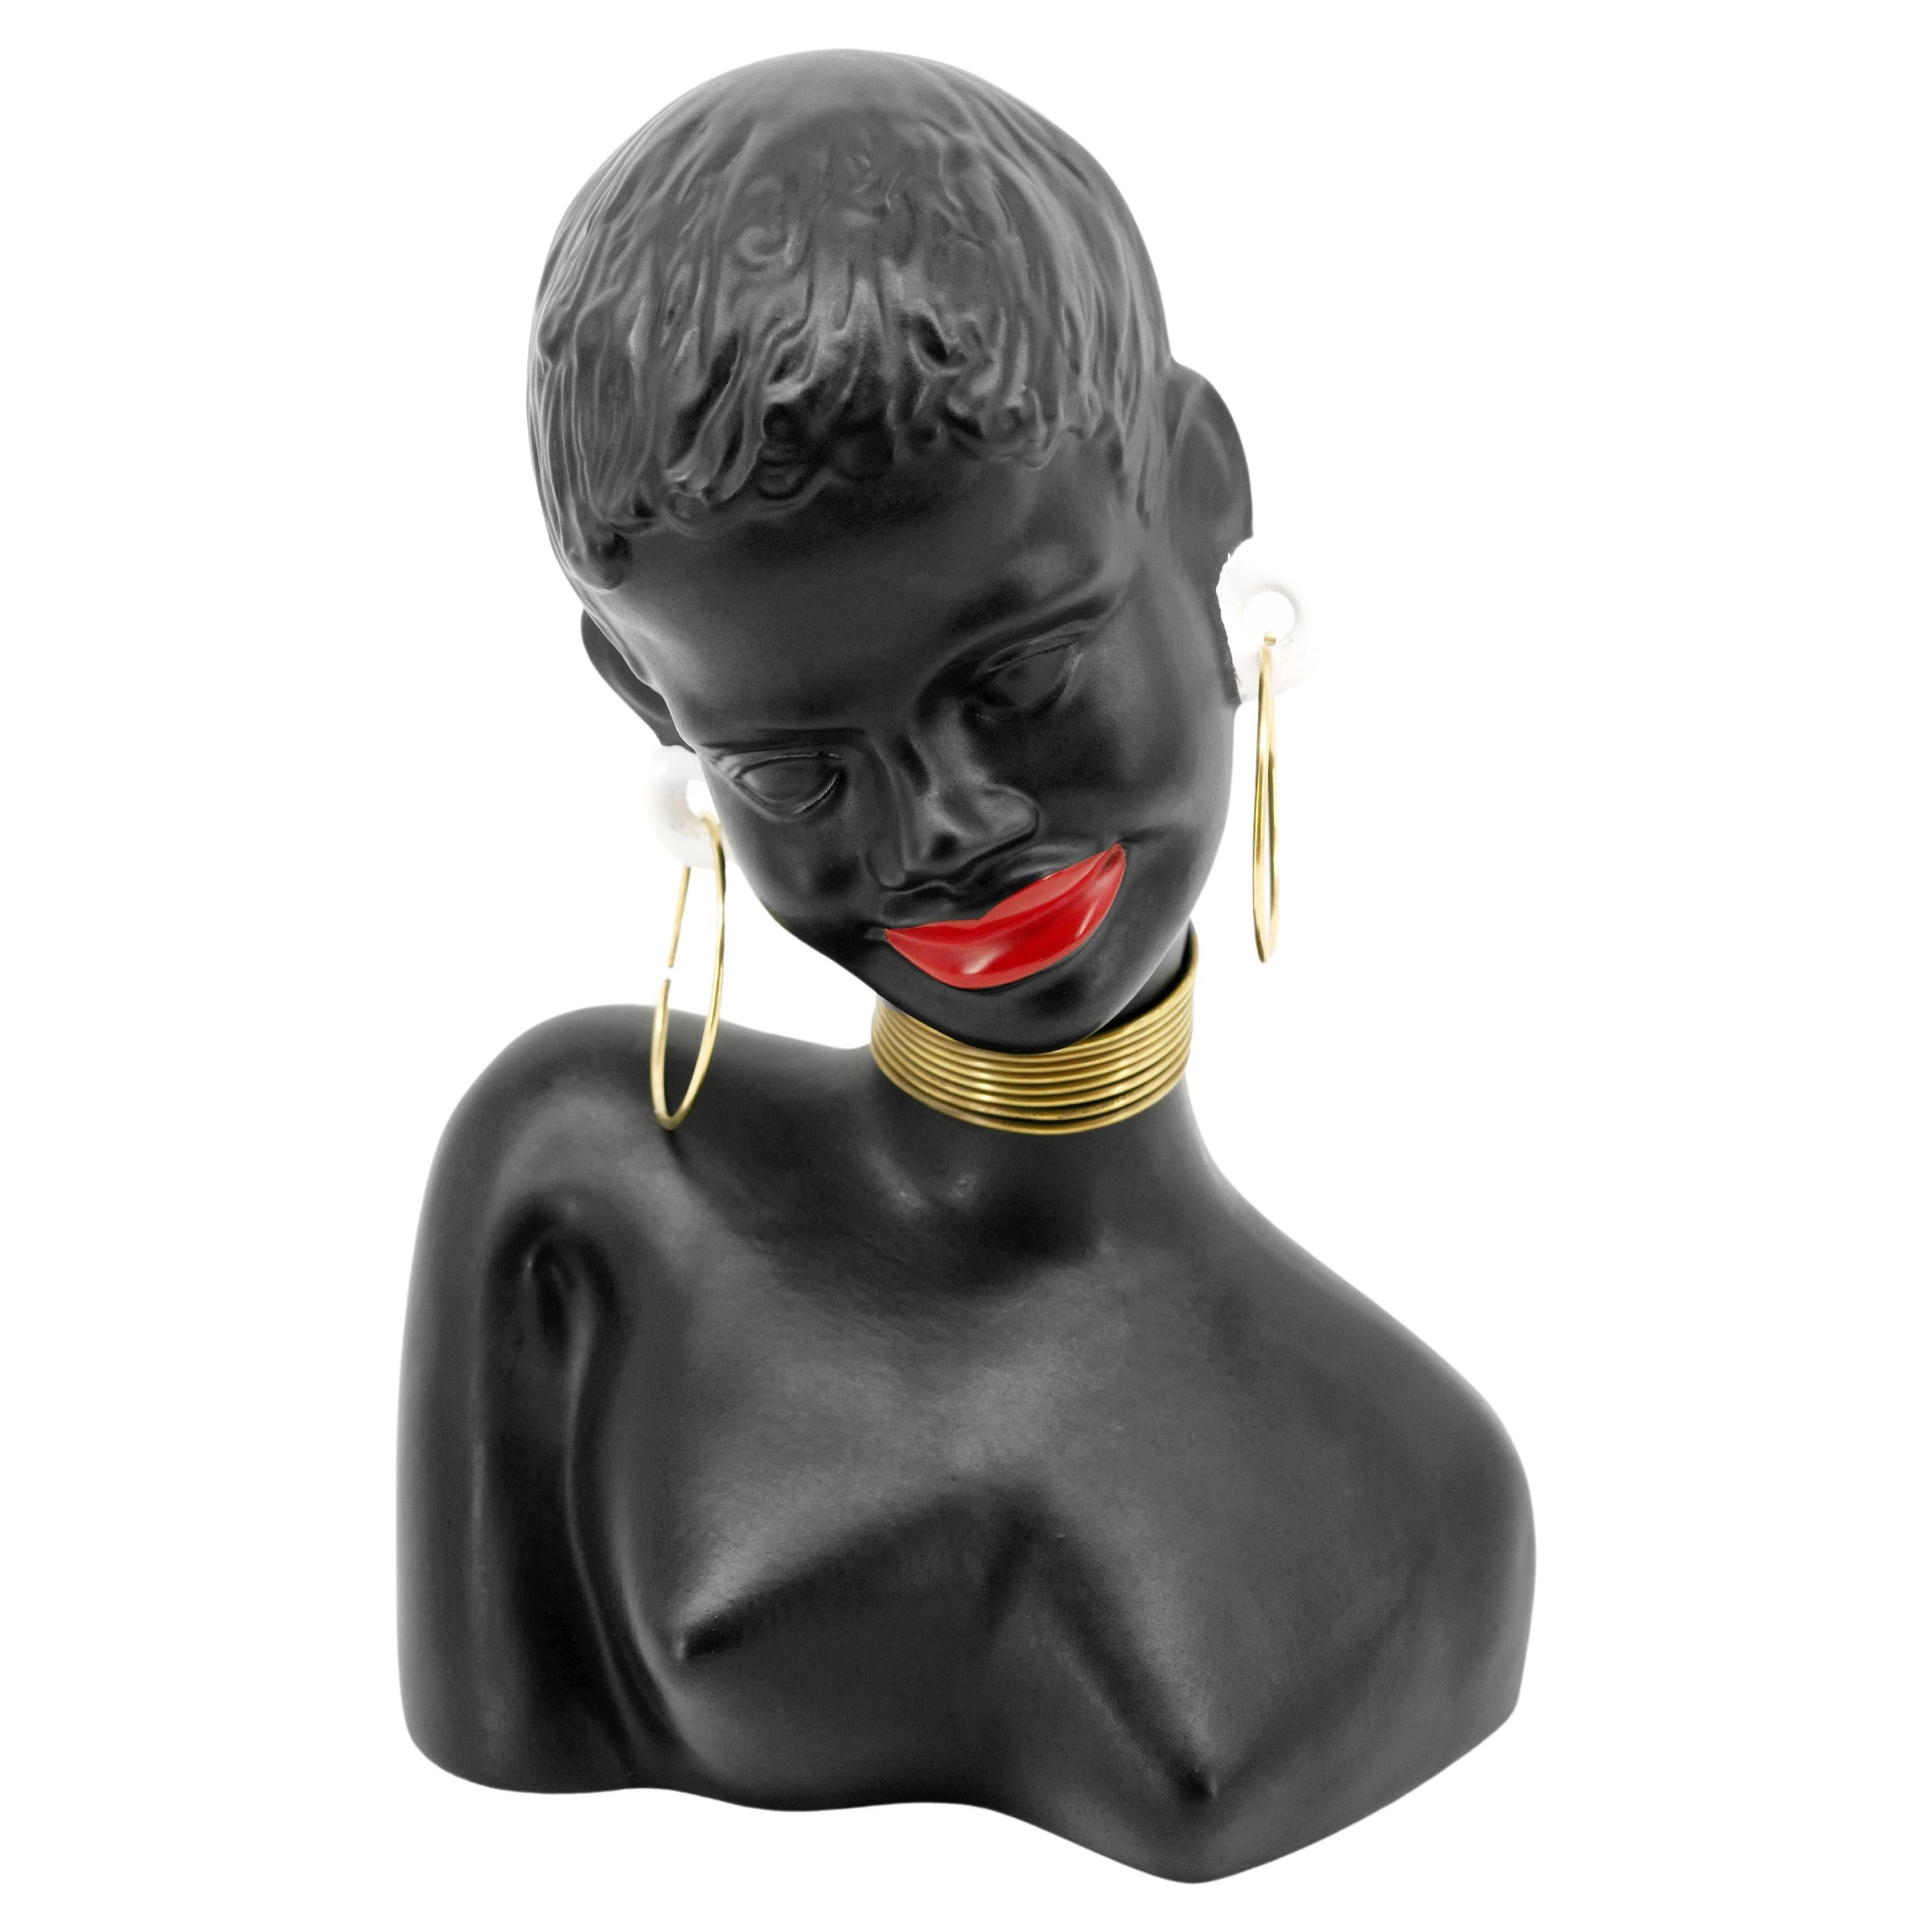 Statue de femme africaine en céramique du milieu du siècle, Allemagne, années 1950. Mesures : Hauteur : 27cm - 10.6 in. ; Largeur : 18.8cm - 7.4 in. ; Profondeur : 13cm - 5.1 in. Joli et décoratif pour une très bonne qualité